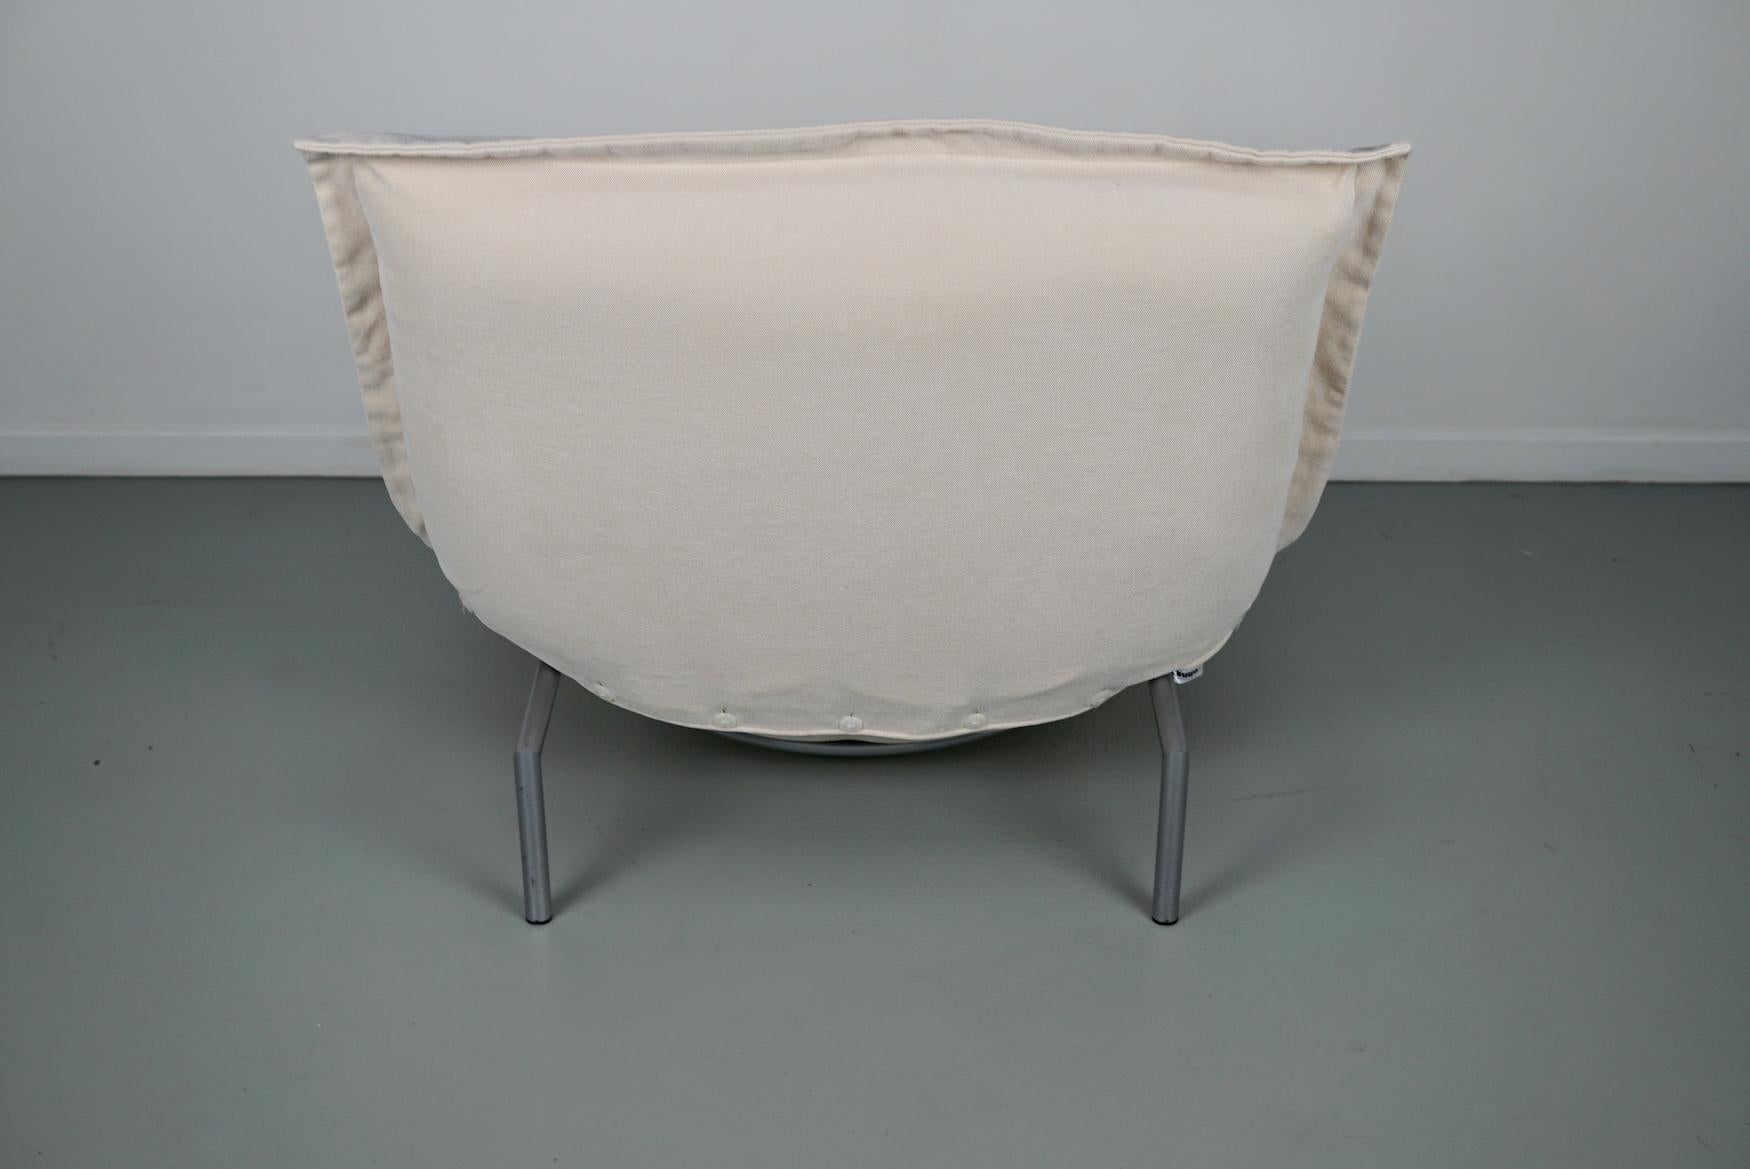 Calin Corner Sofa Set by Pascal Mourgue for Cinna / Ligne Roset - 4 seater 12